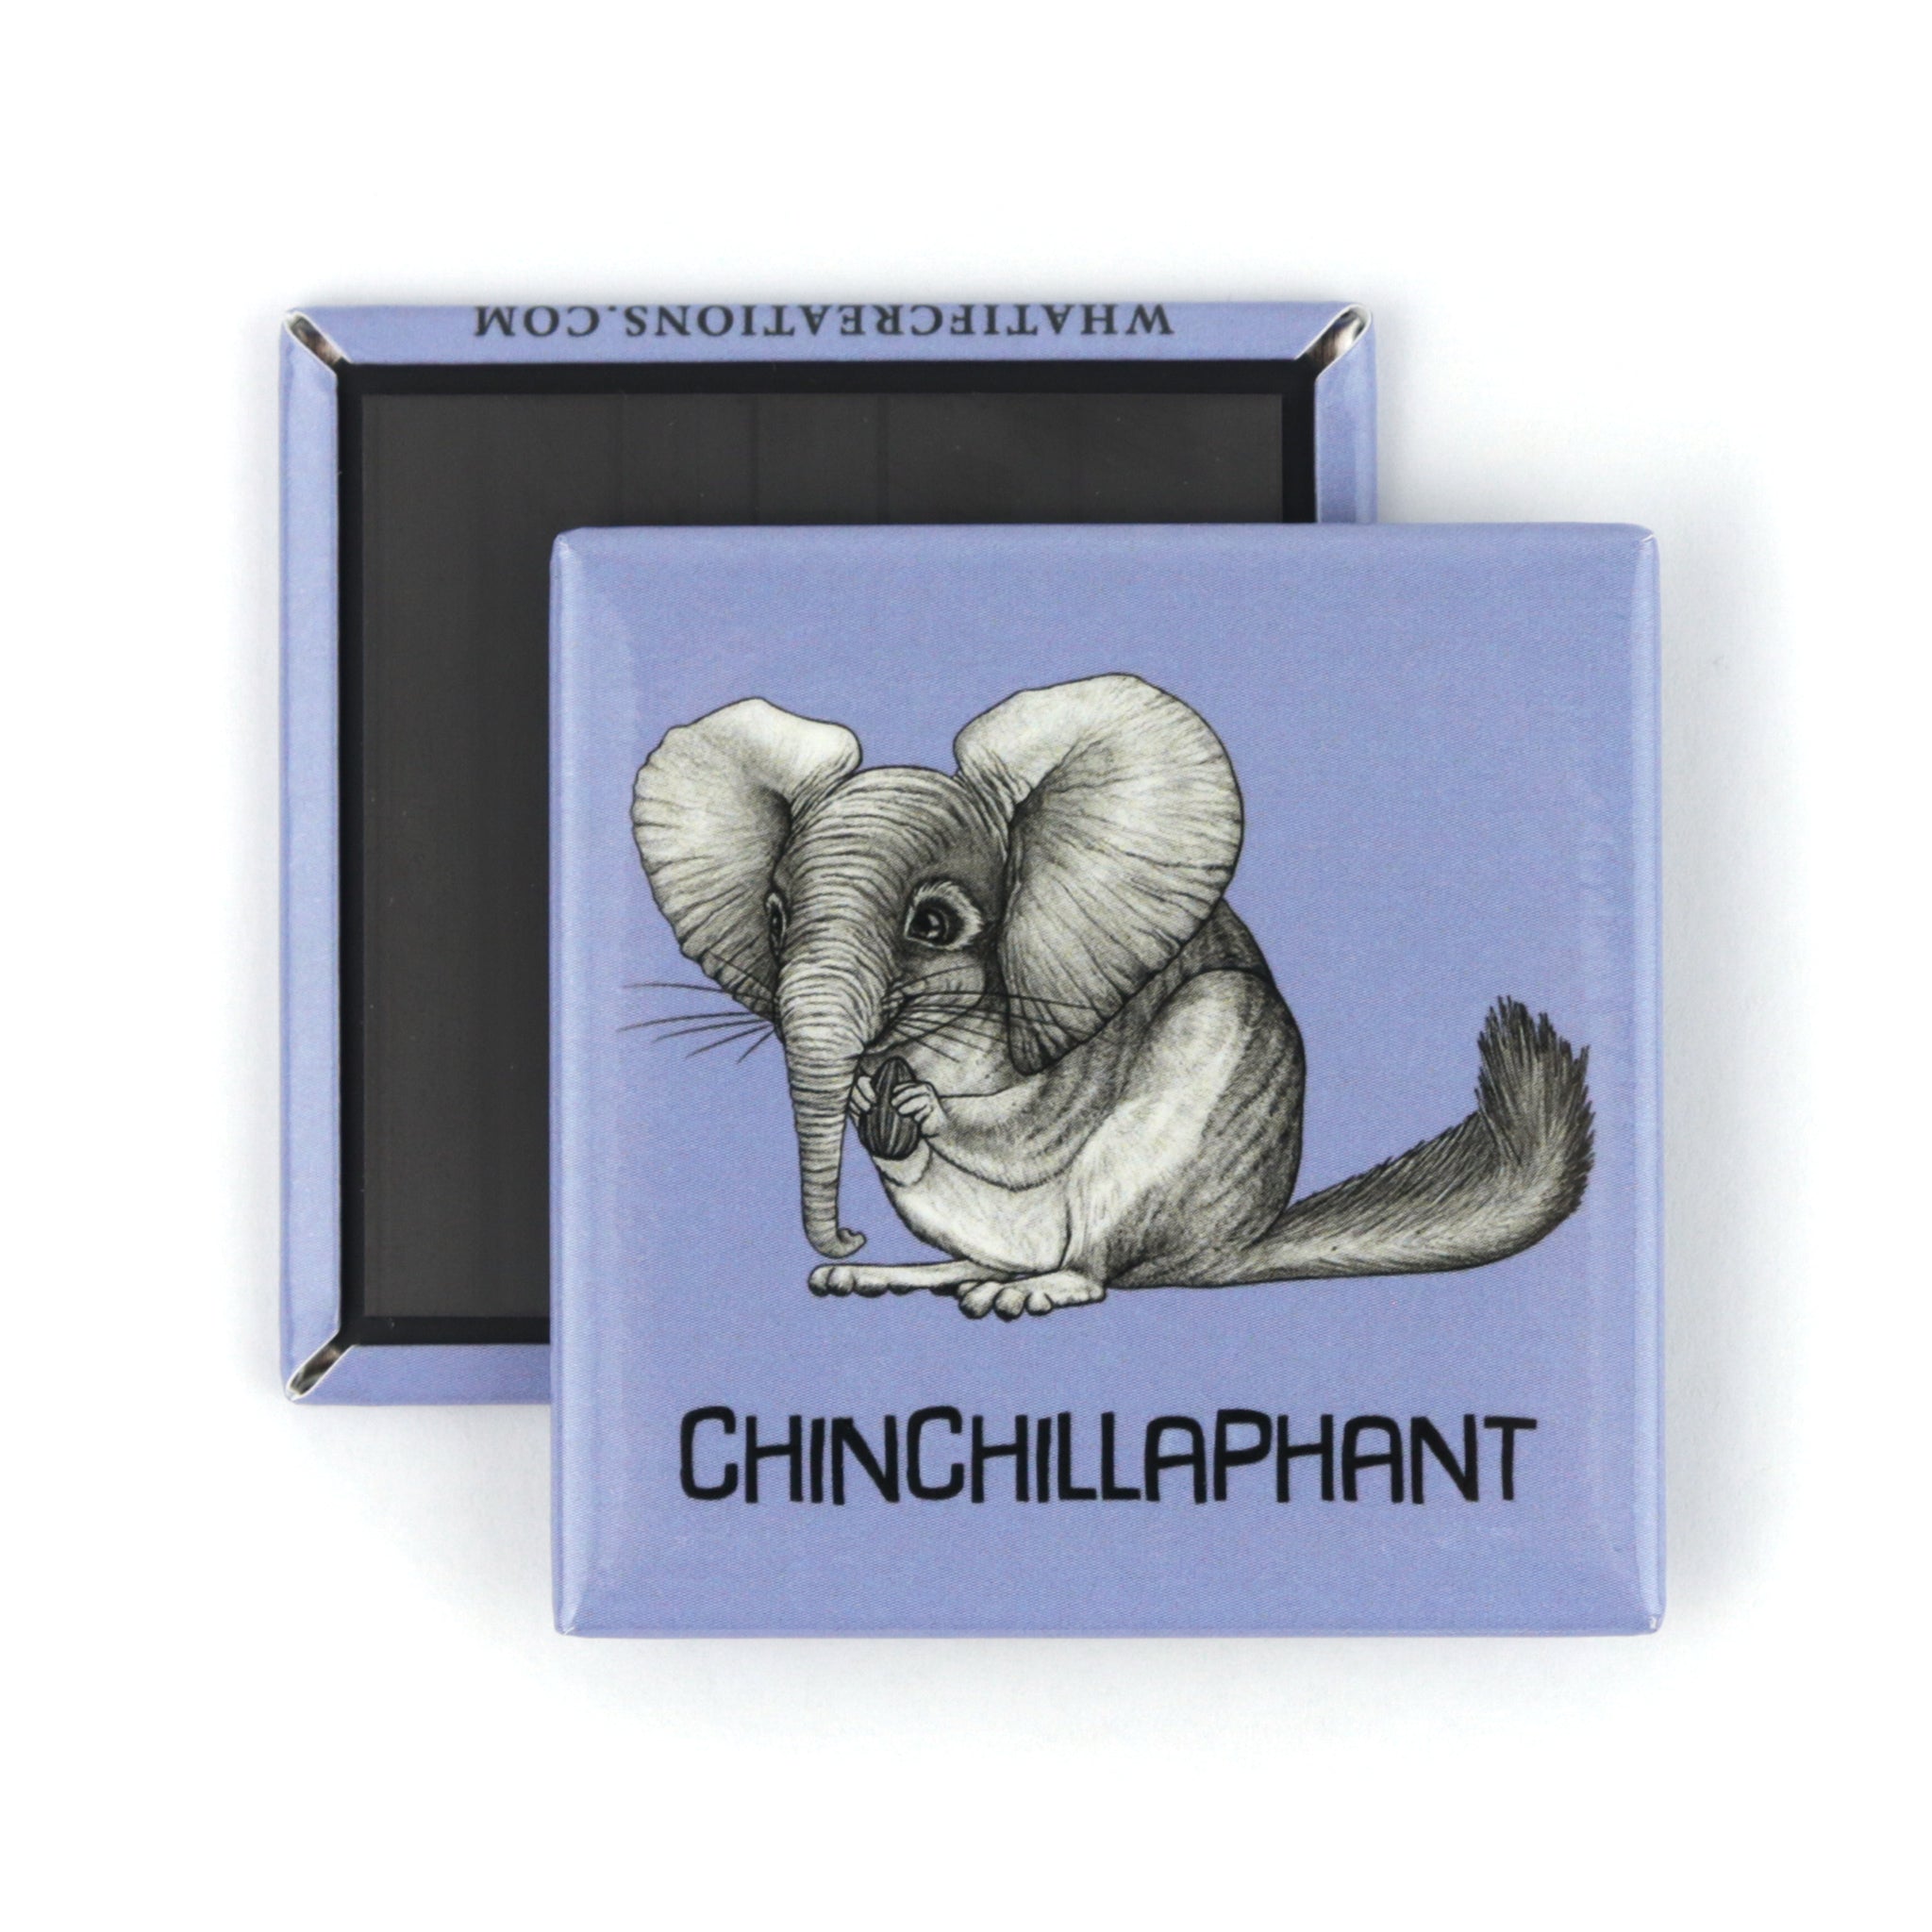 Chinchillaphant | Chinchilla + Elephant Hybrid Animal | 2" Fridge Magnet